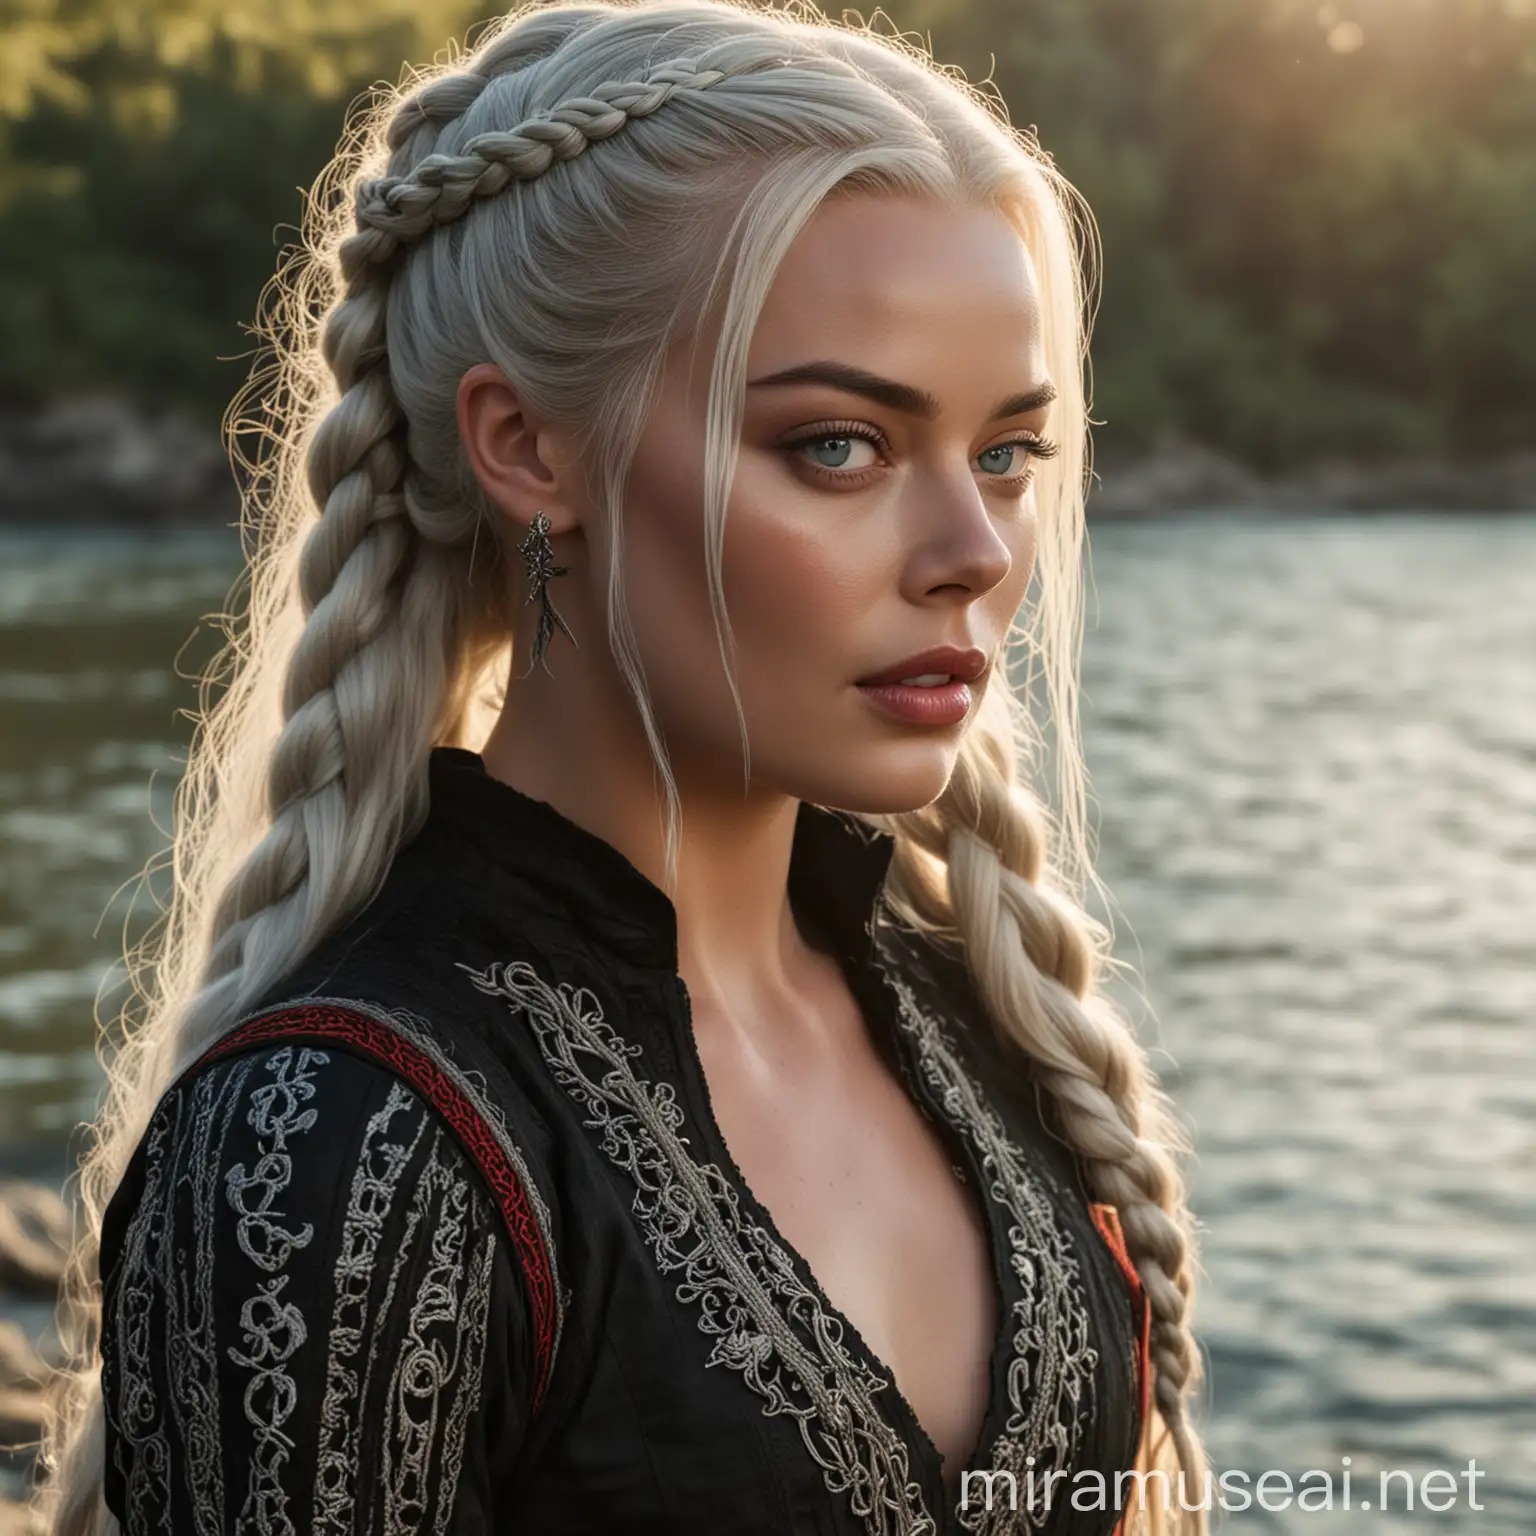 Margot Robbie en tant que princesse de la Maison Targaryen de l'Ancienne Valyria aux yeux clairs avec de longs cheveux blancs-argentés coiffés avec des tresses, portant une longue robe noire et rouge typiquement Targaryen, se tenant devant une rivière ensoleillée